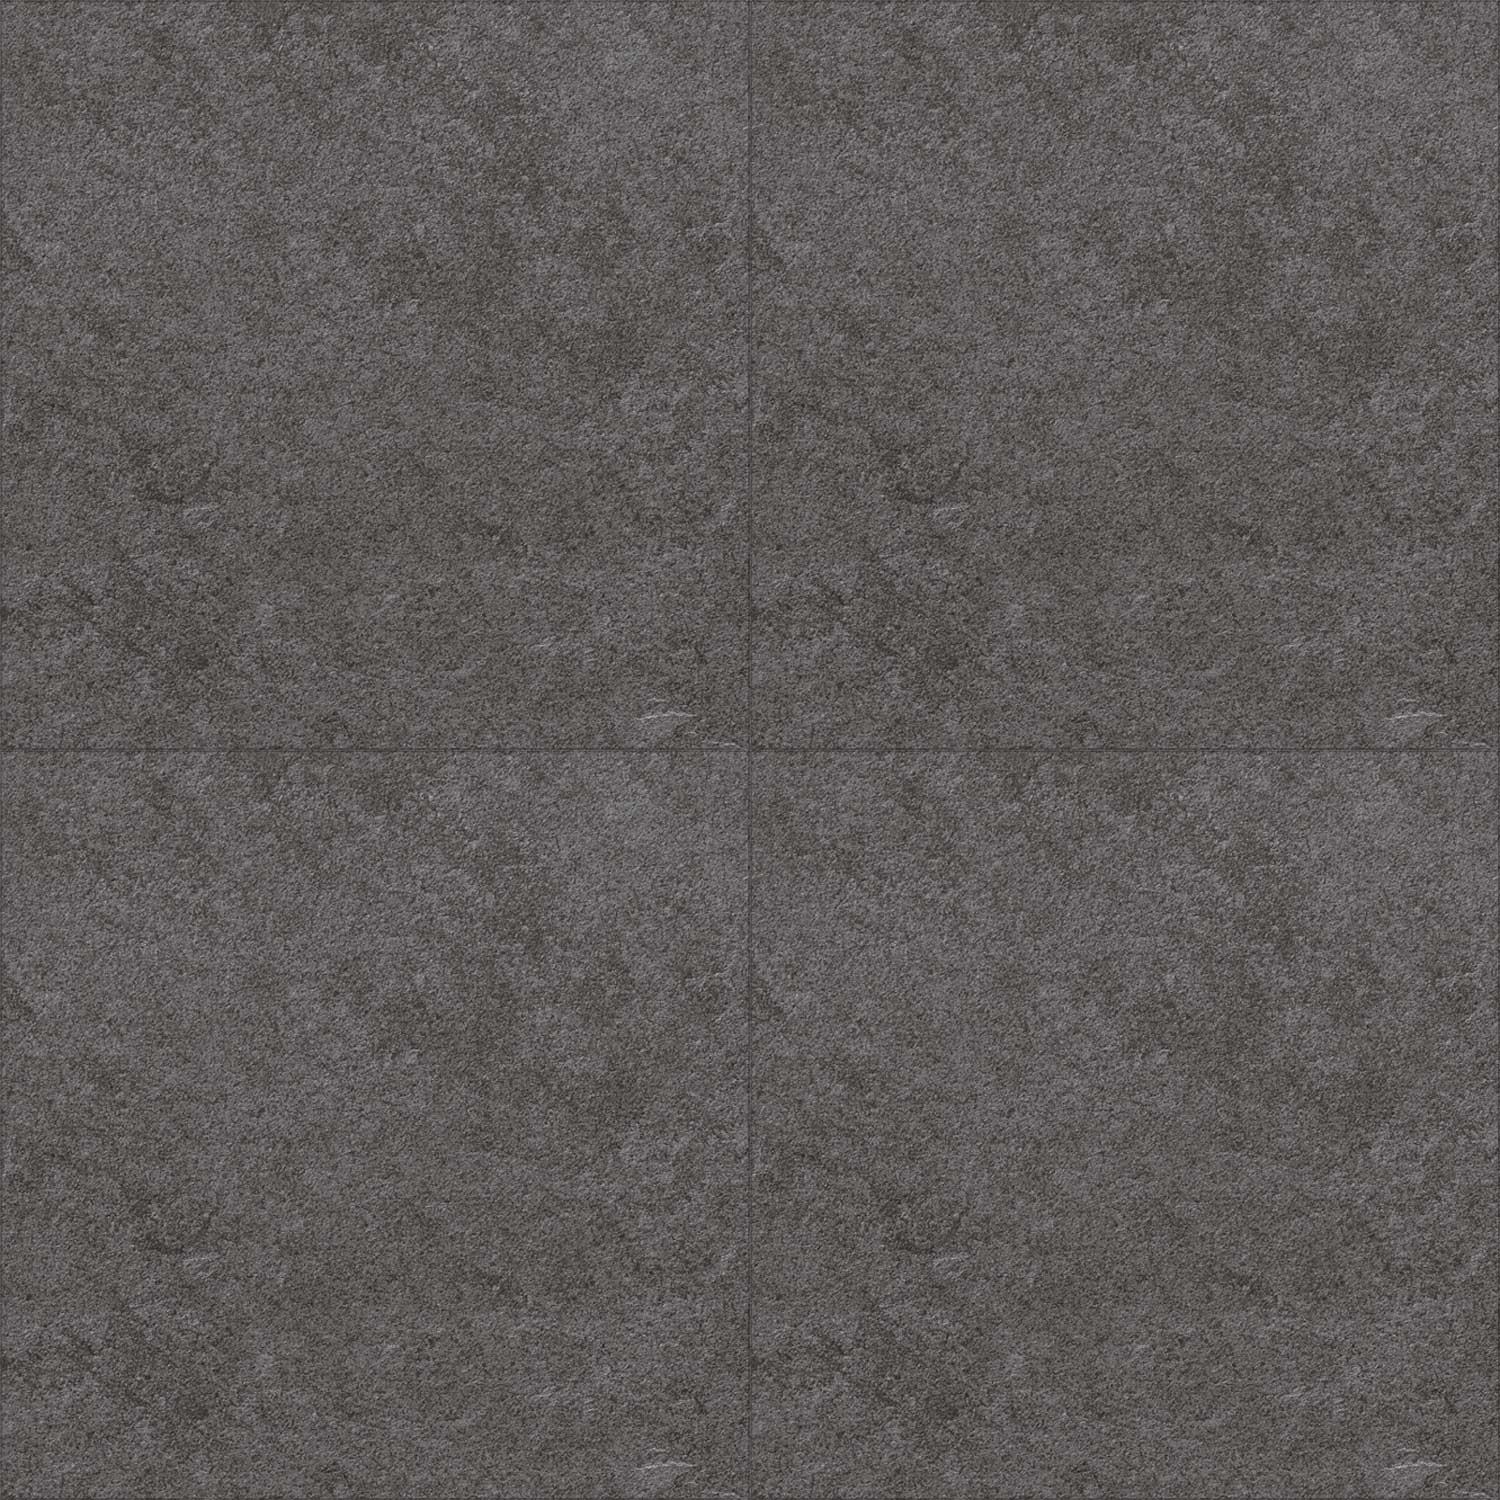 Touchstone Black Porcelain Floor Tile Stone Effect 590 x 590mm